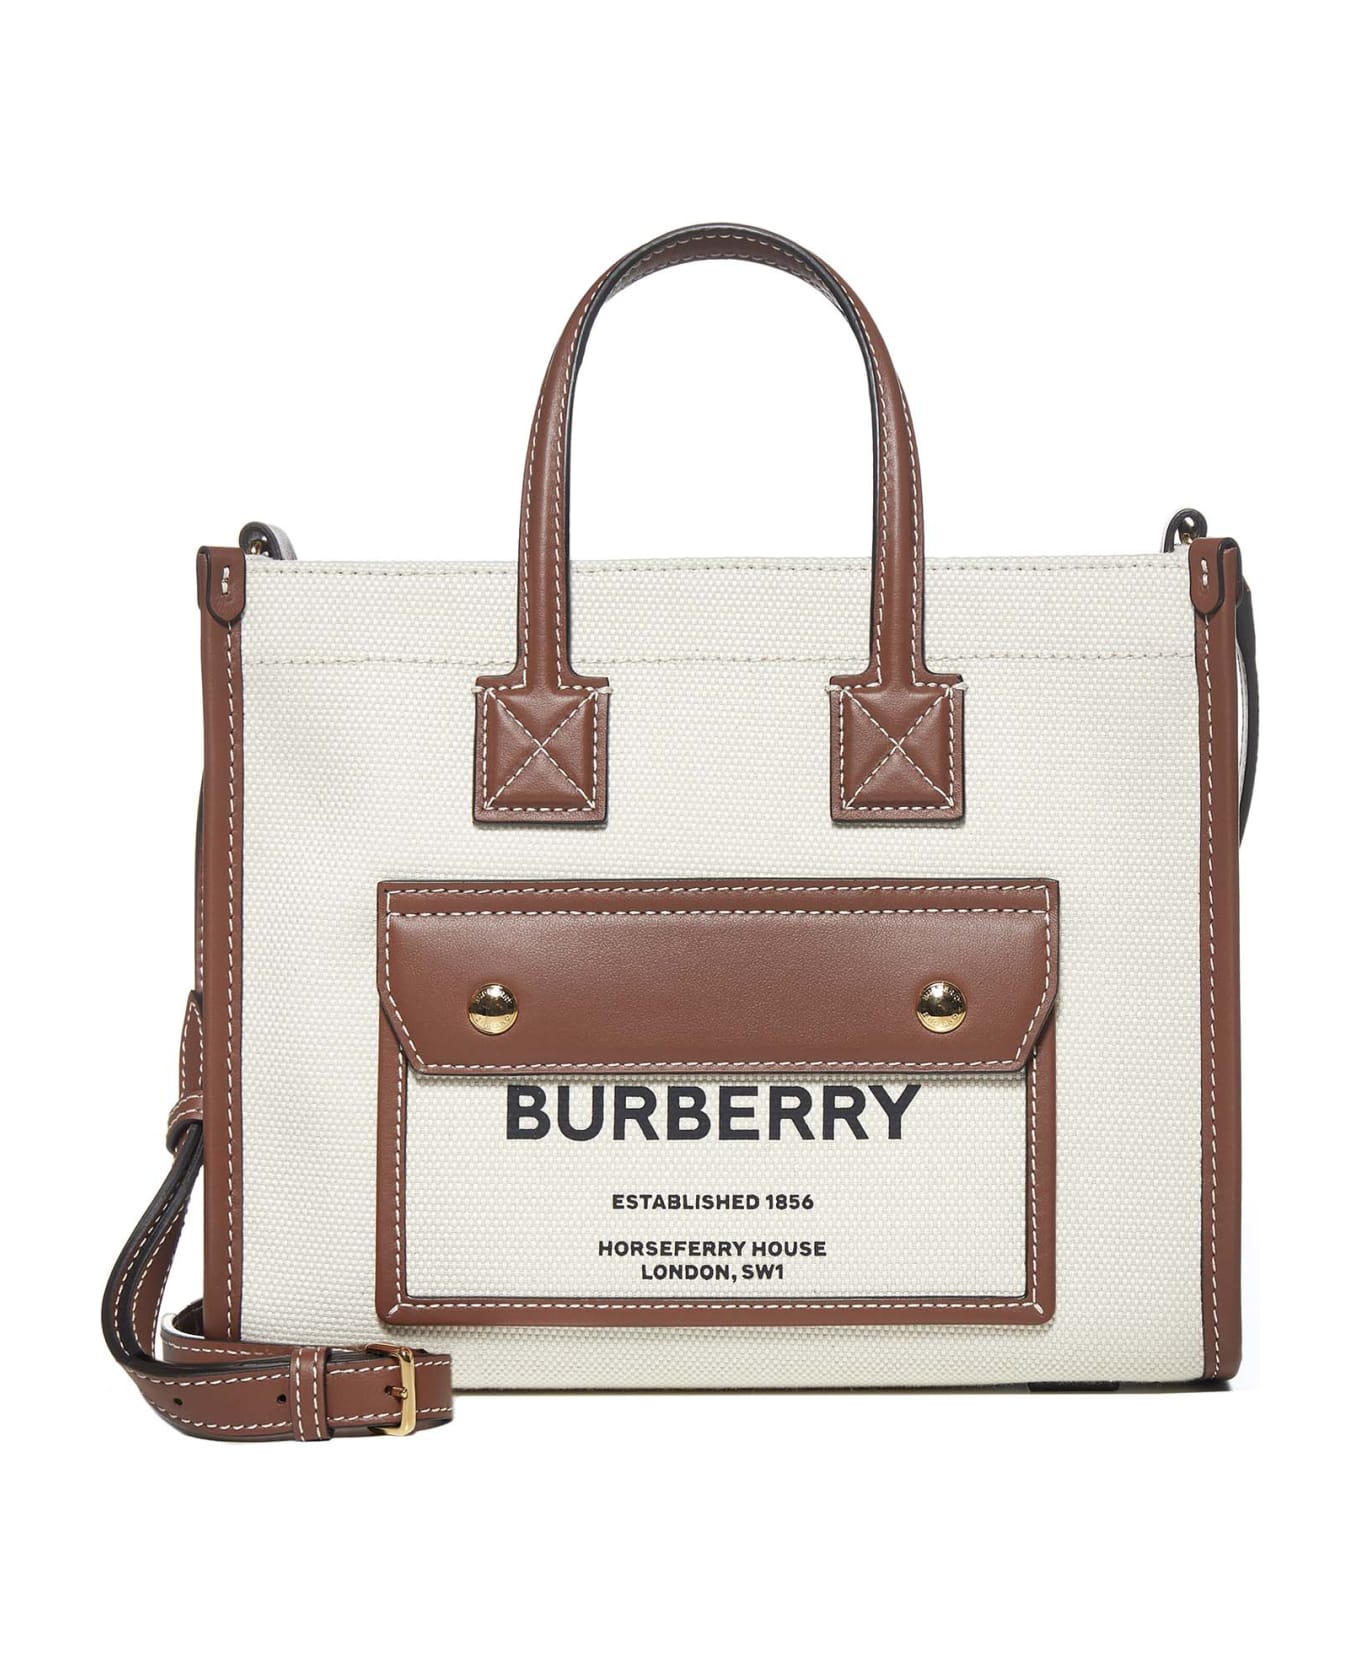 Burberry New Tote Bag - Natural/tan